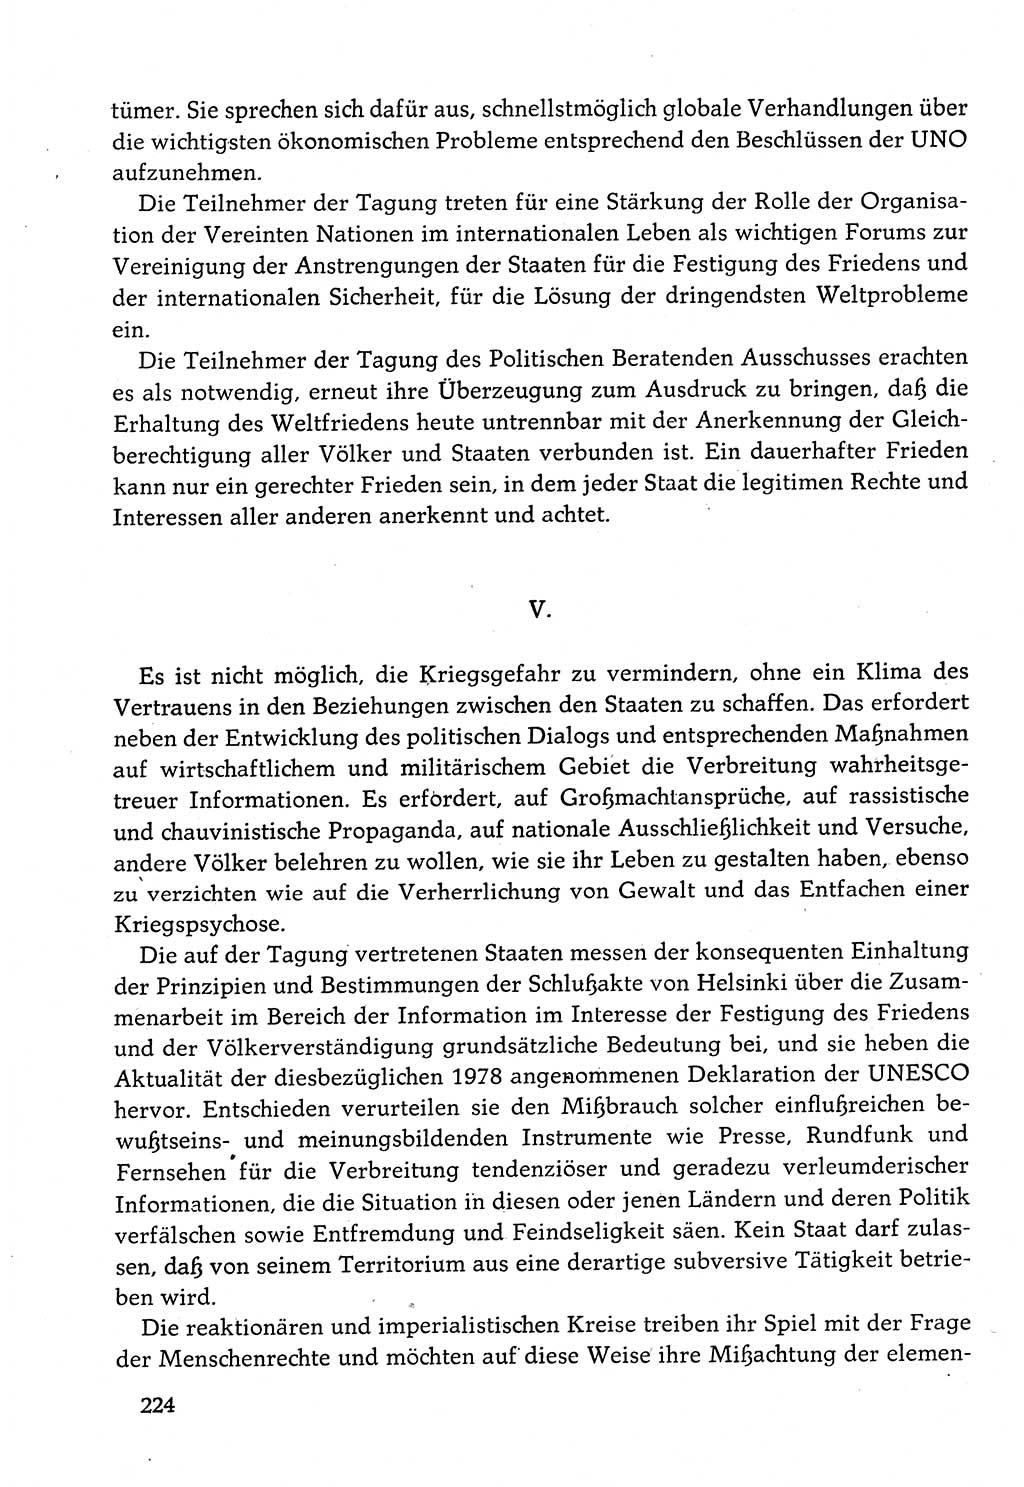 Dokumente der Sozialistischen Einheitspartei Deutschlands (SED) [Deutsche Demokratische Republik (DDR)] 1982-1983, Seite 224 (Dok. SED DDR 1982-1983, S. 224)